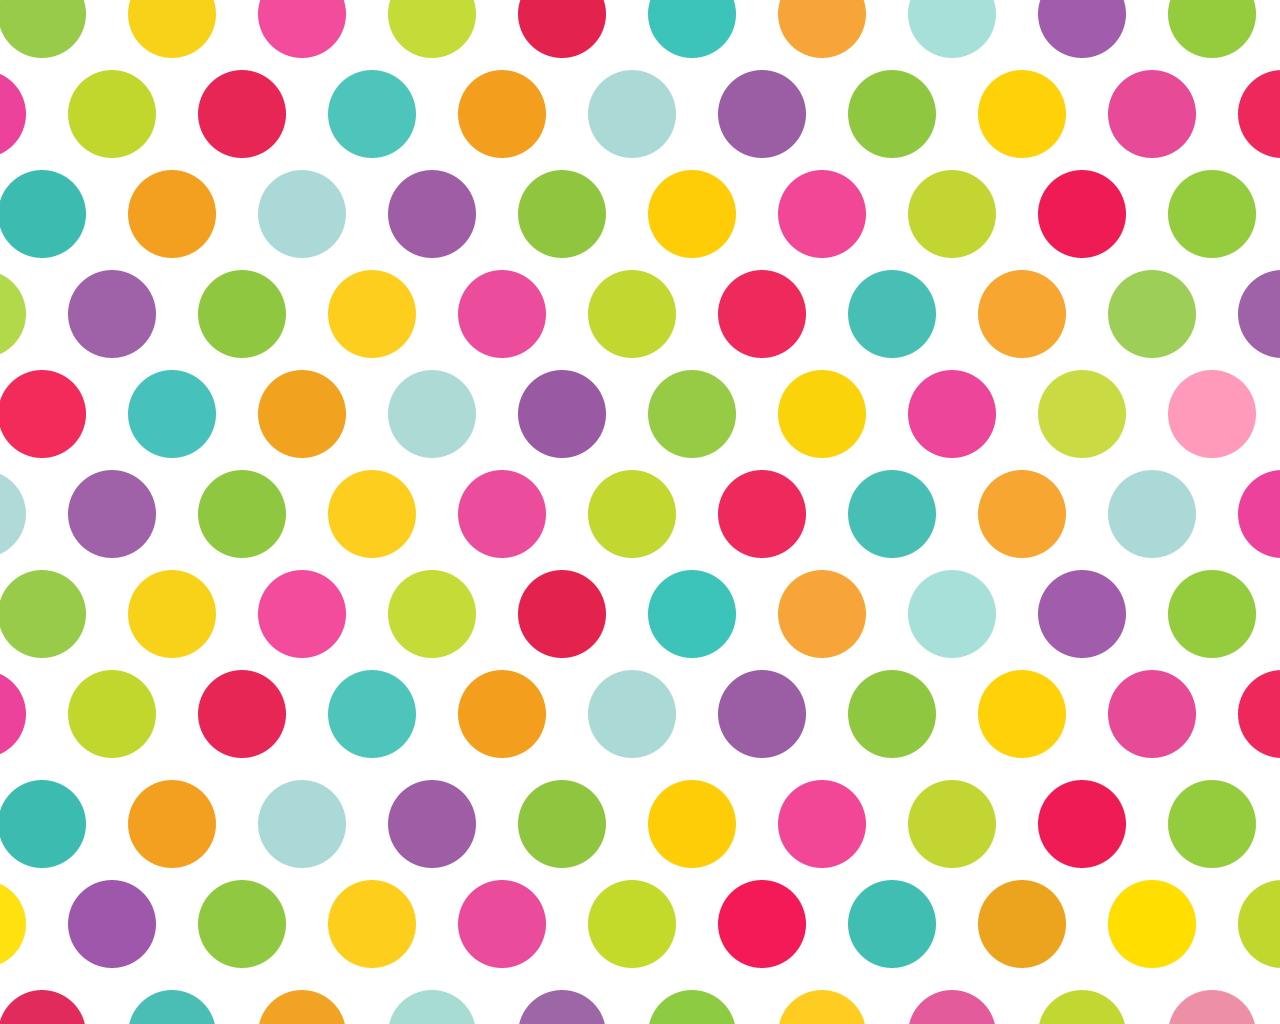 Polka Dot Phone Wallpapers